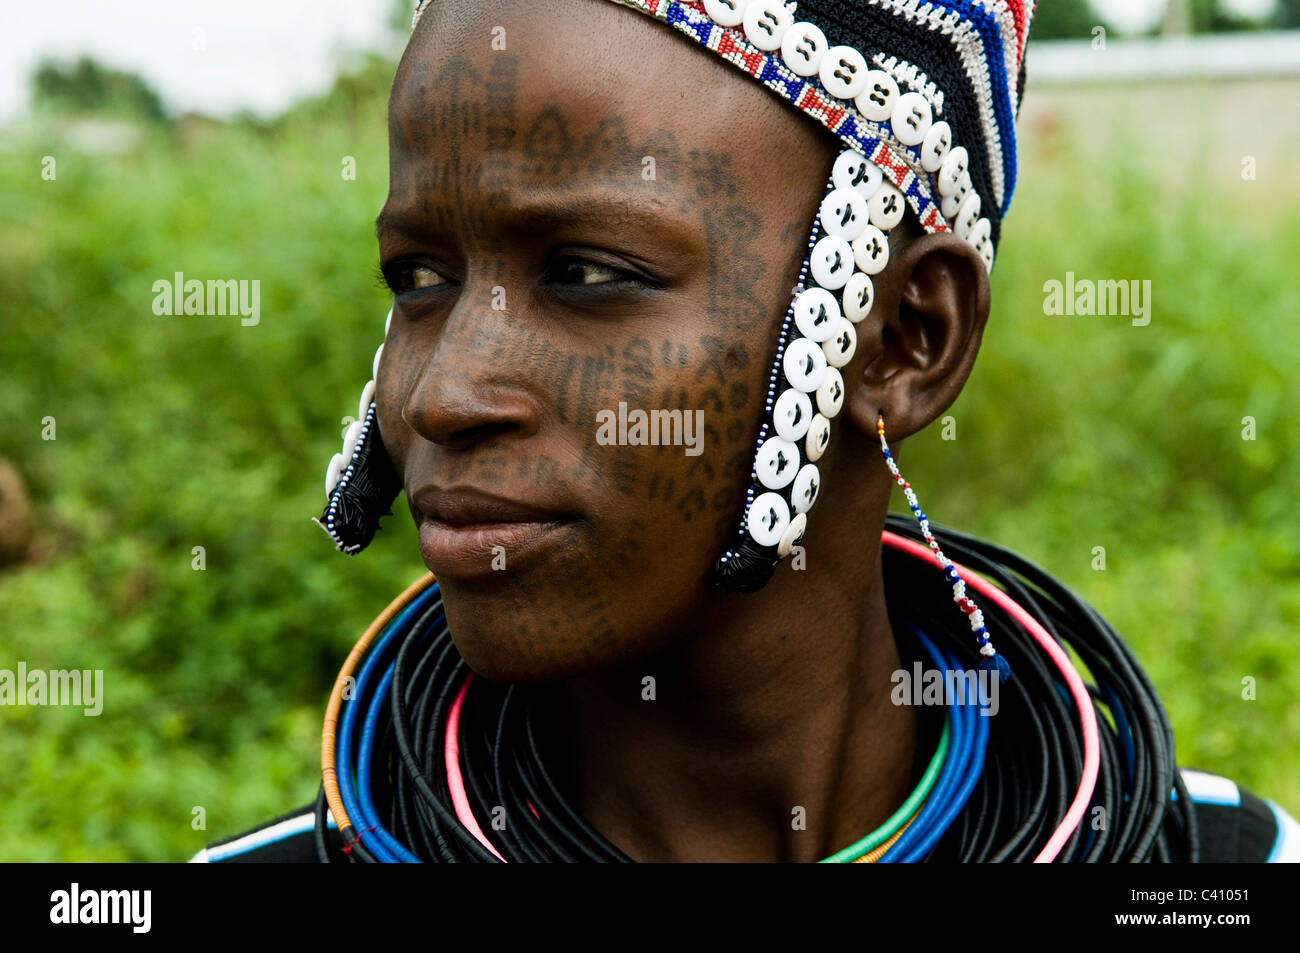 Die Peul / Fula / Fulani Frauen schmücken ihre Gesichter und Körper mit bunten Tattoos. Stockfoto